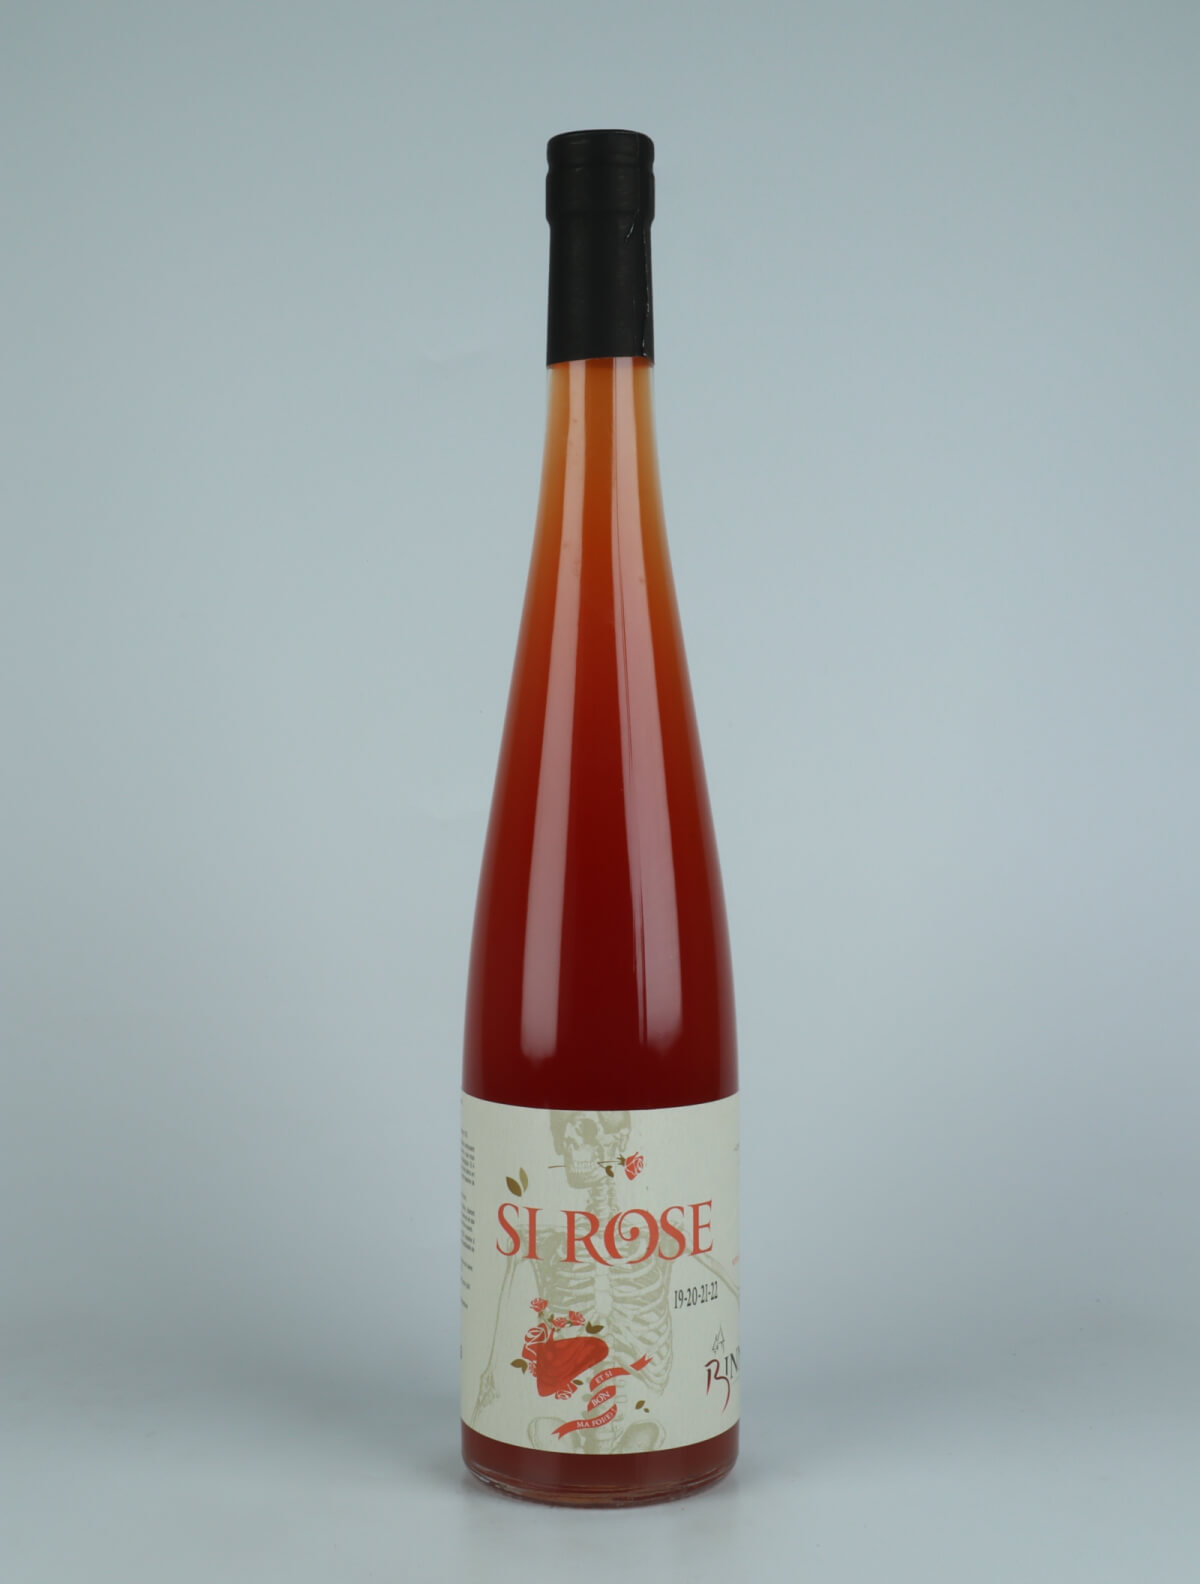 A bottle N.V. Si Rose (19/20/21) Orange wine from Domaine Christian Binner, Alsace in France